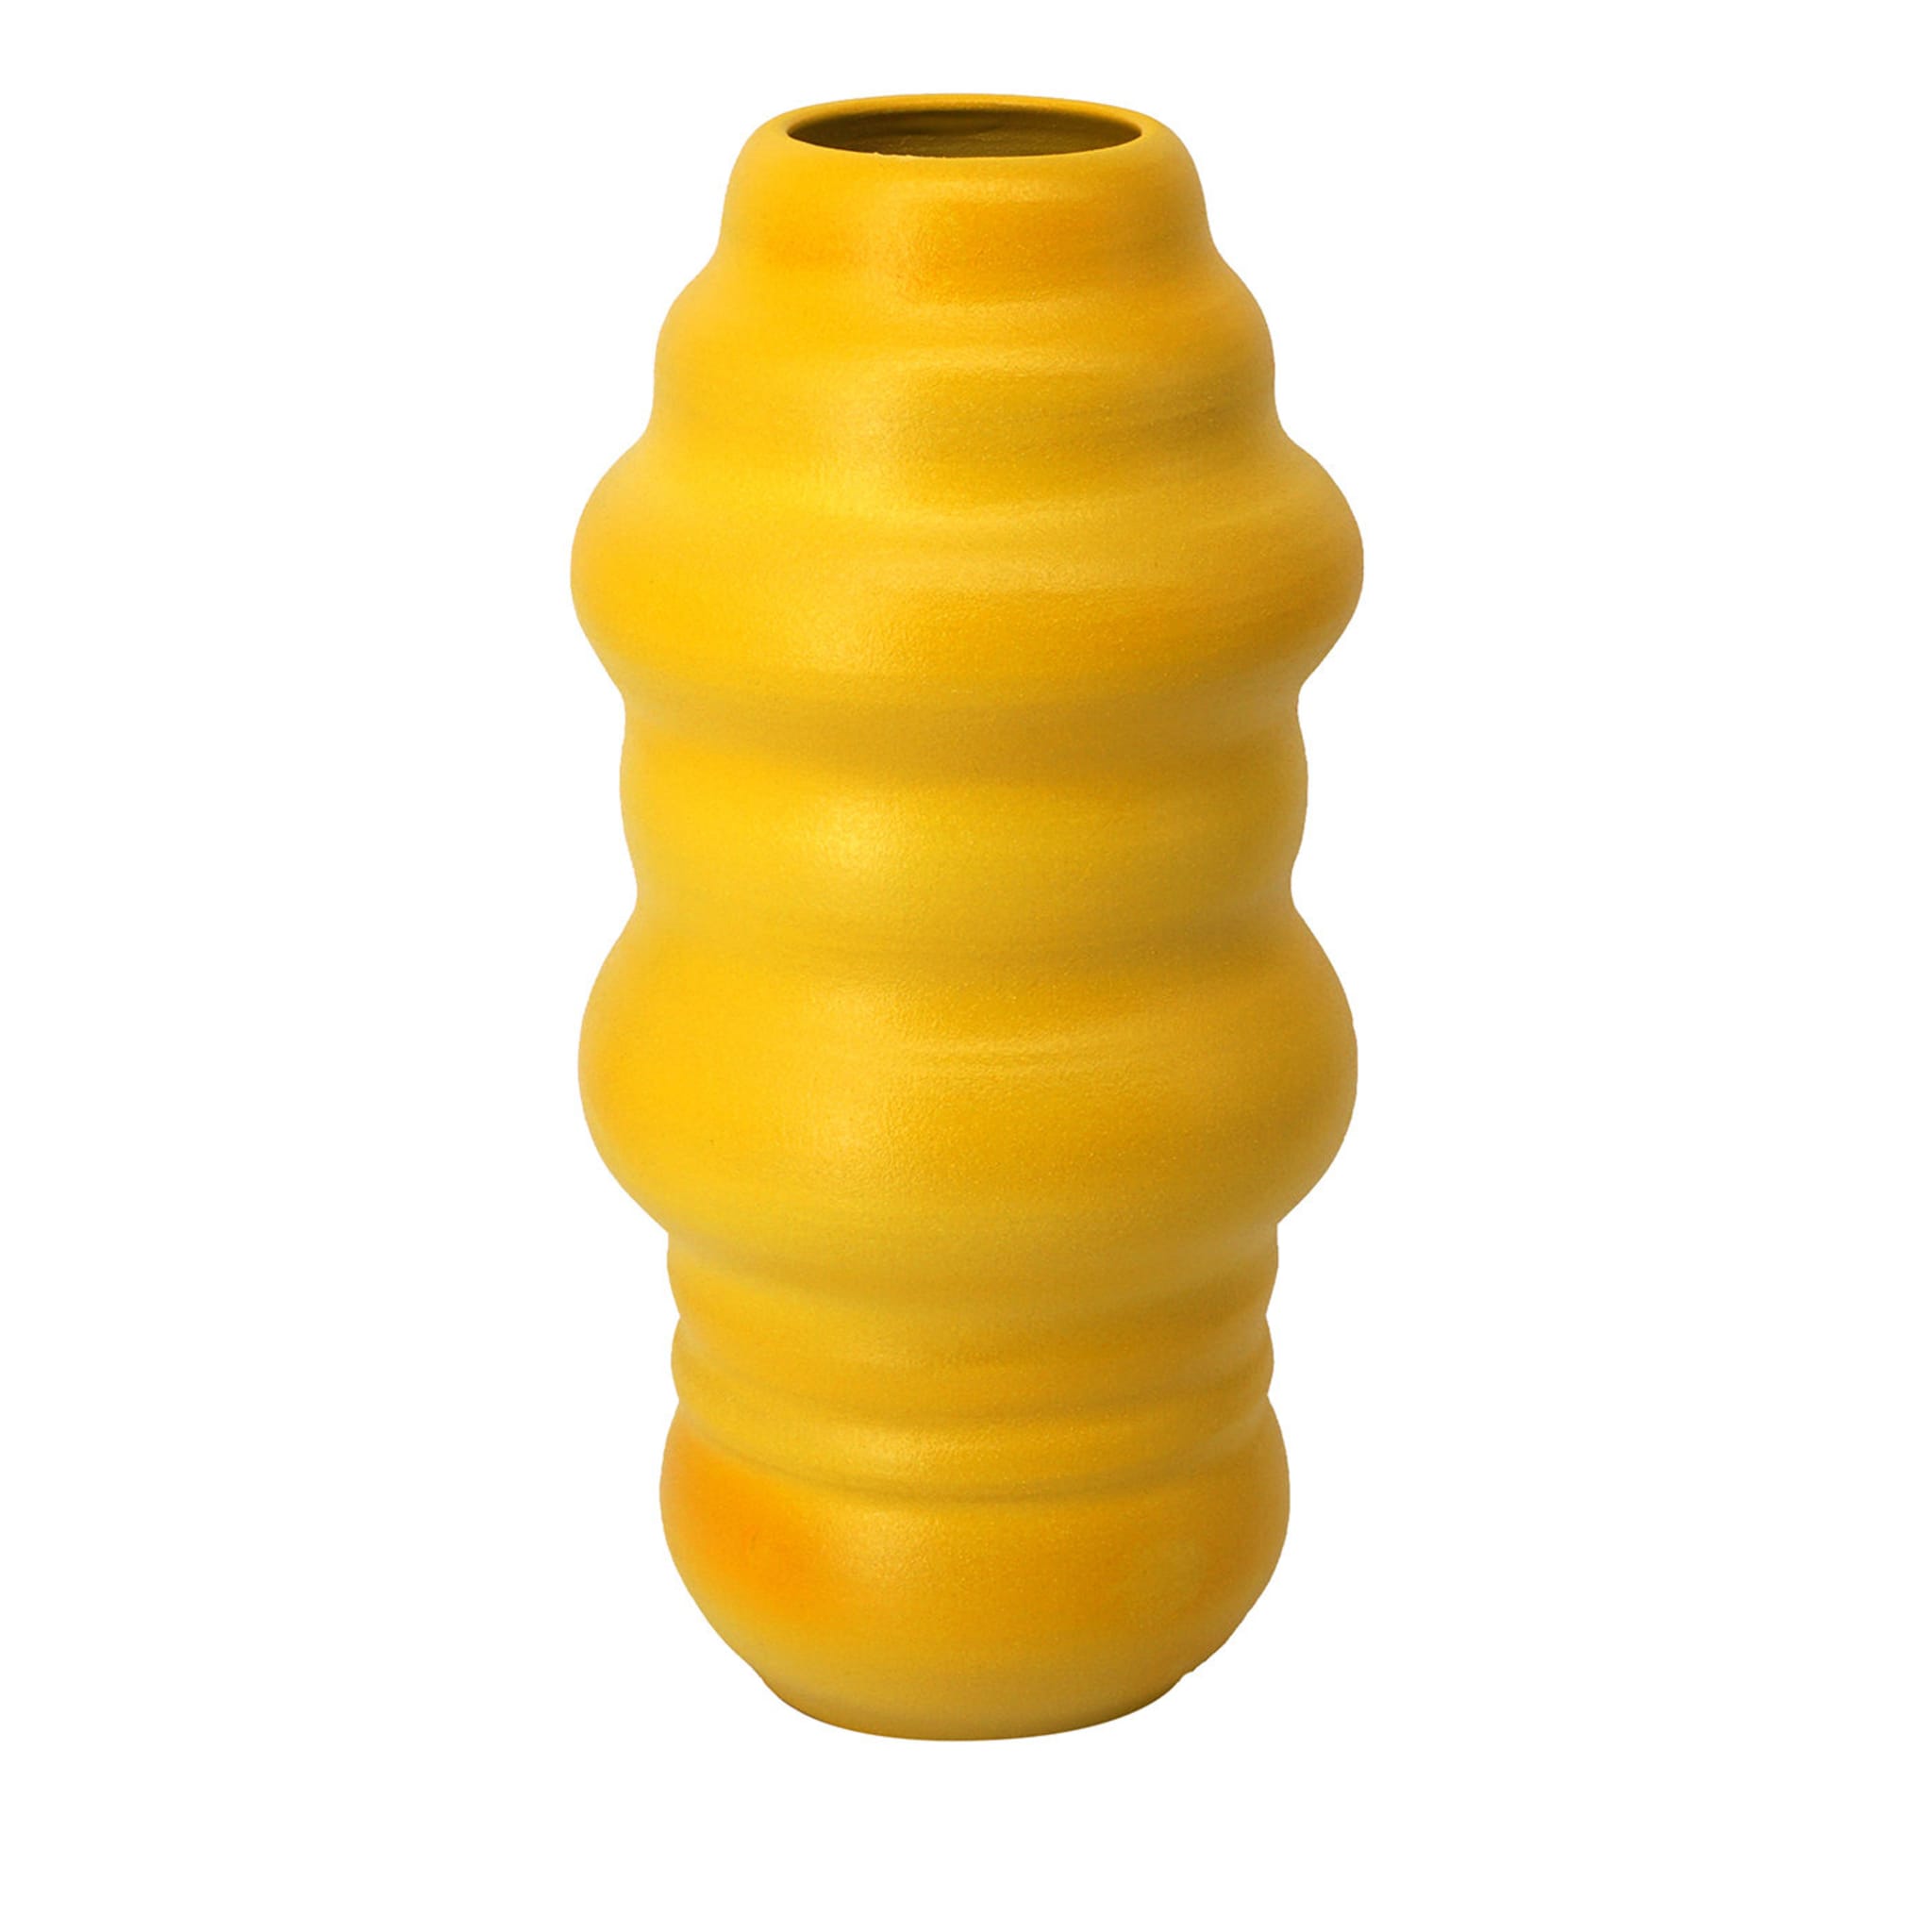 Crisalide Yellow Vase #1 - Main view